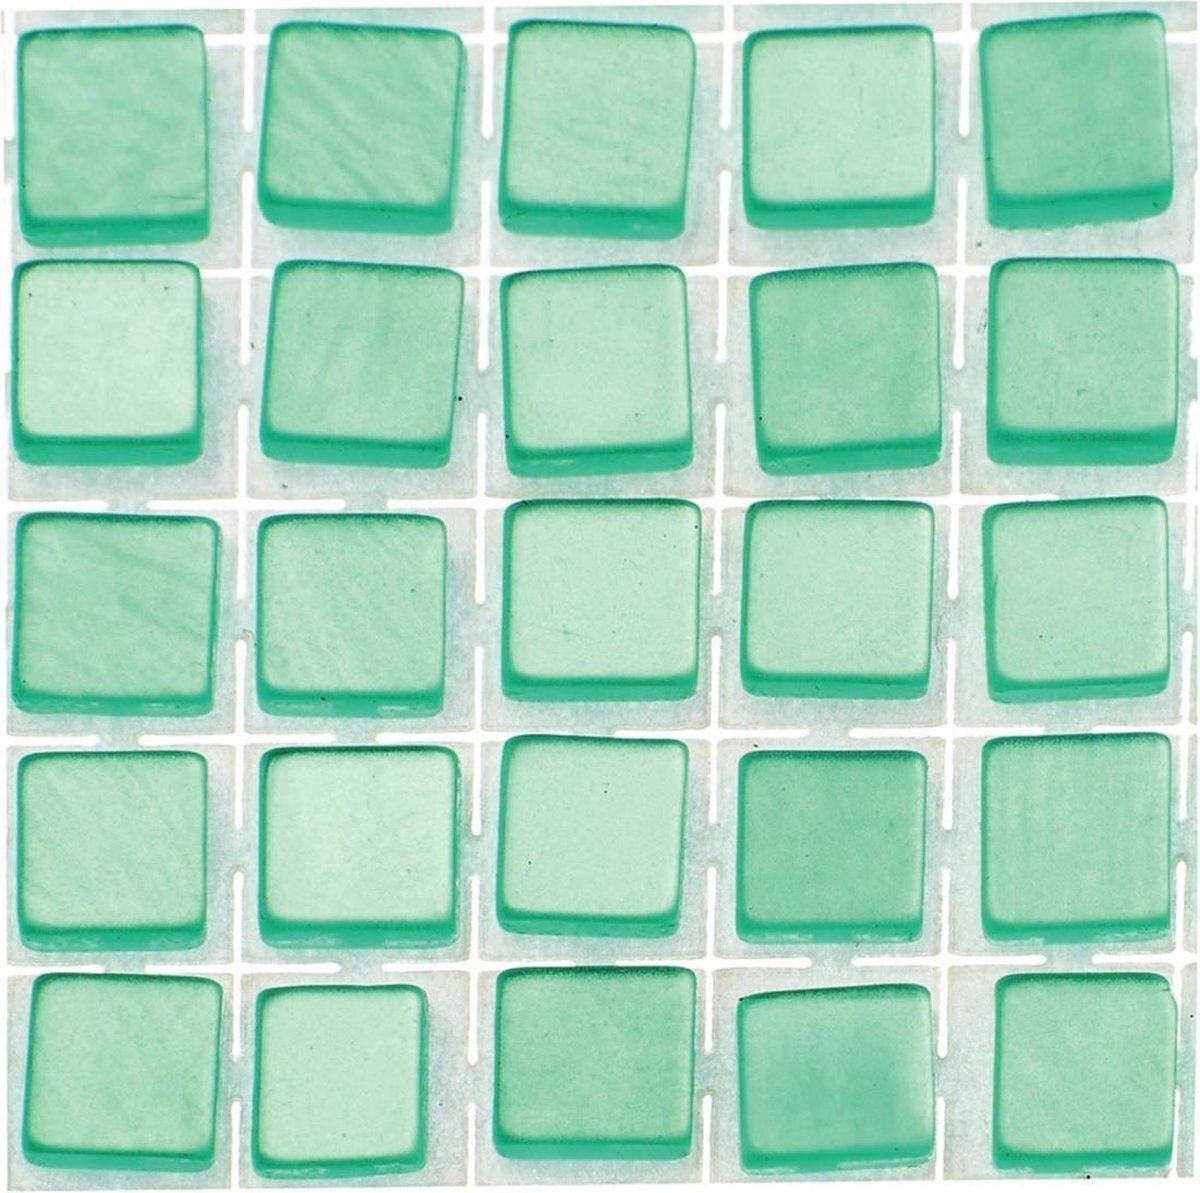 Glorex Hobby 714x stuks mozaieken maken steentjes/tegels kleur turquoise met formaat 5 x 5 x 2 mm